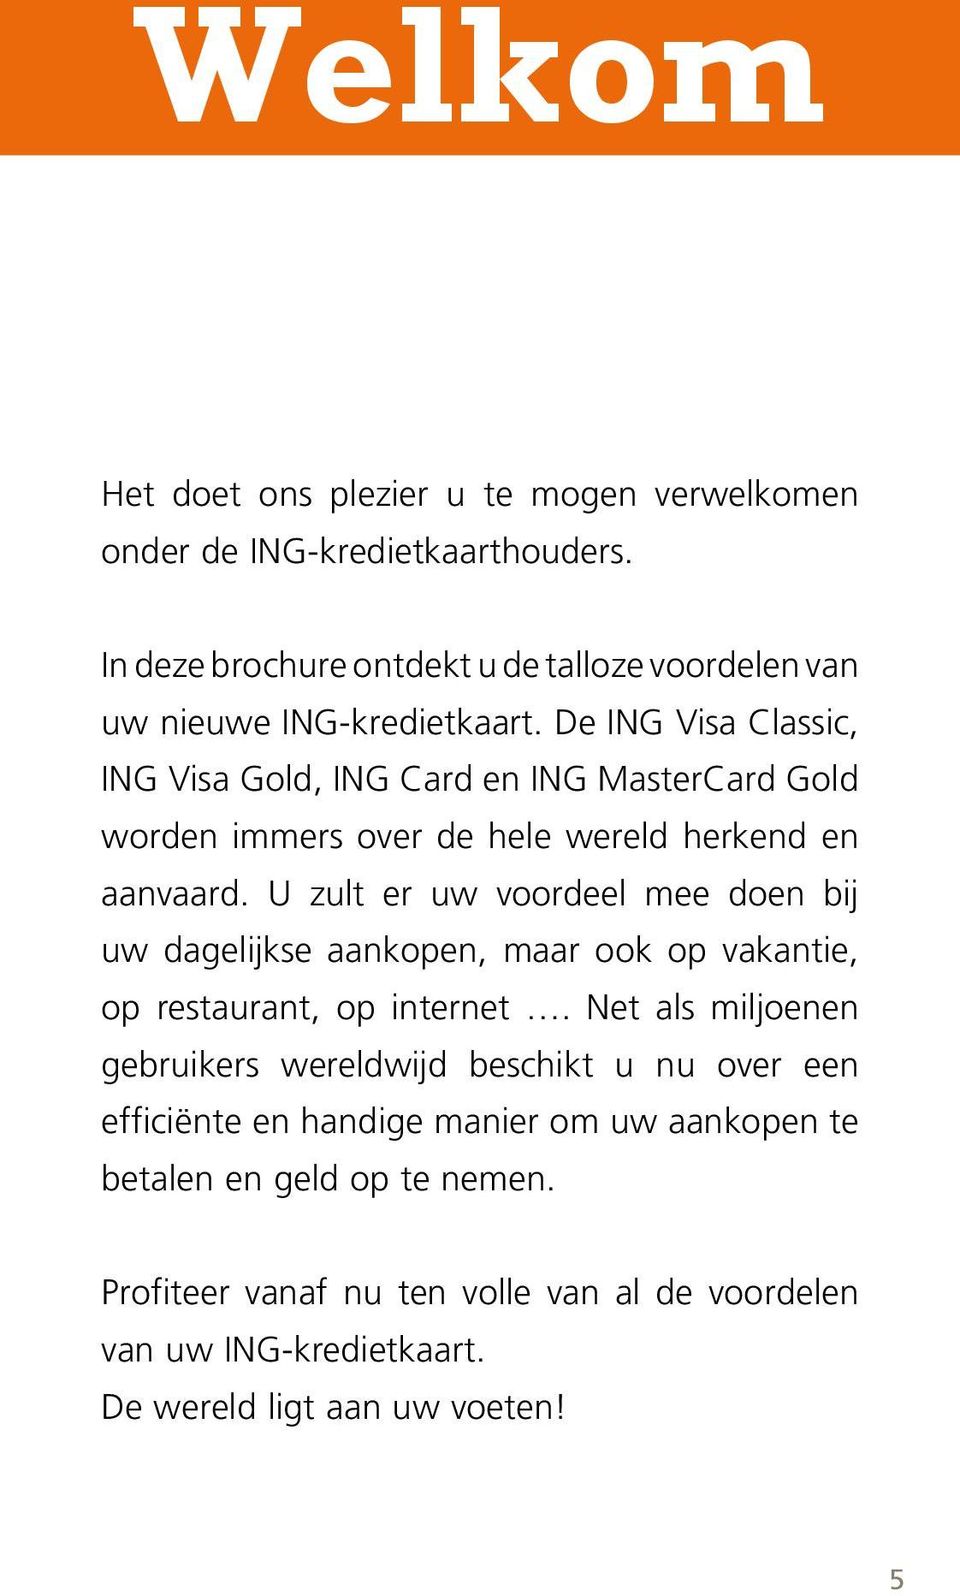 De ING Visa Classic, ING Visa Gold, ING Card en ING MasterCard Gold worden immers over de hele wereld herkend en aanvaard.